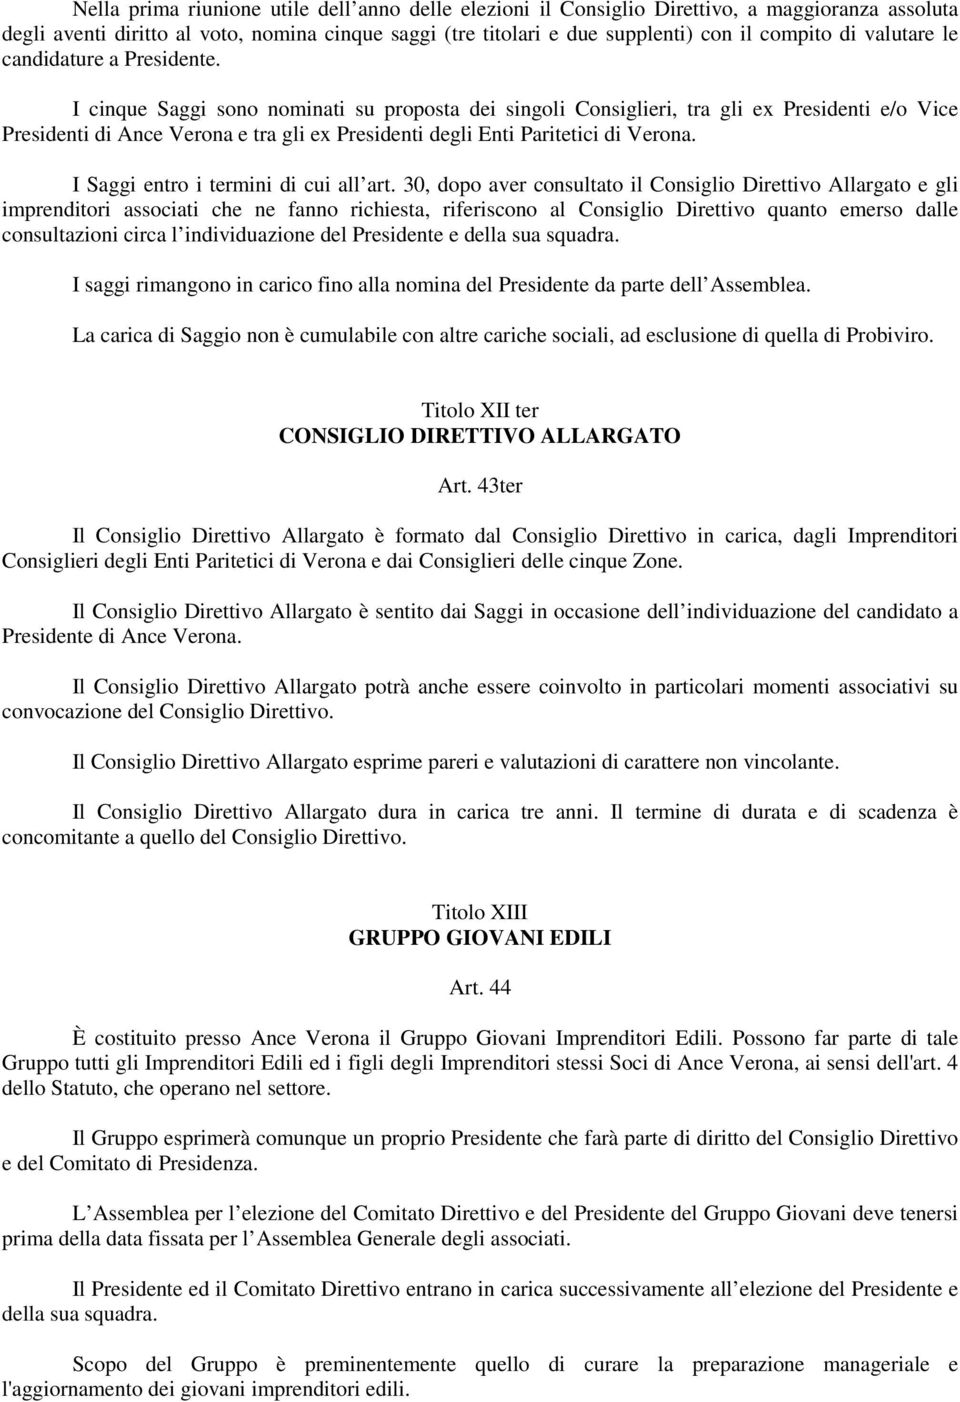 I cinque Saggi sono nominati su proposta dei singoli Consiglieri, tra gli ex Presidenti e/o Vice Presidenti di Ance Verona e tra gli ex Presidenti degli Enti Paritetici di Verona.